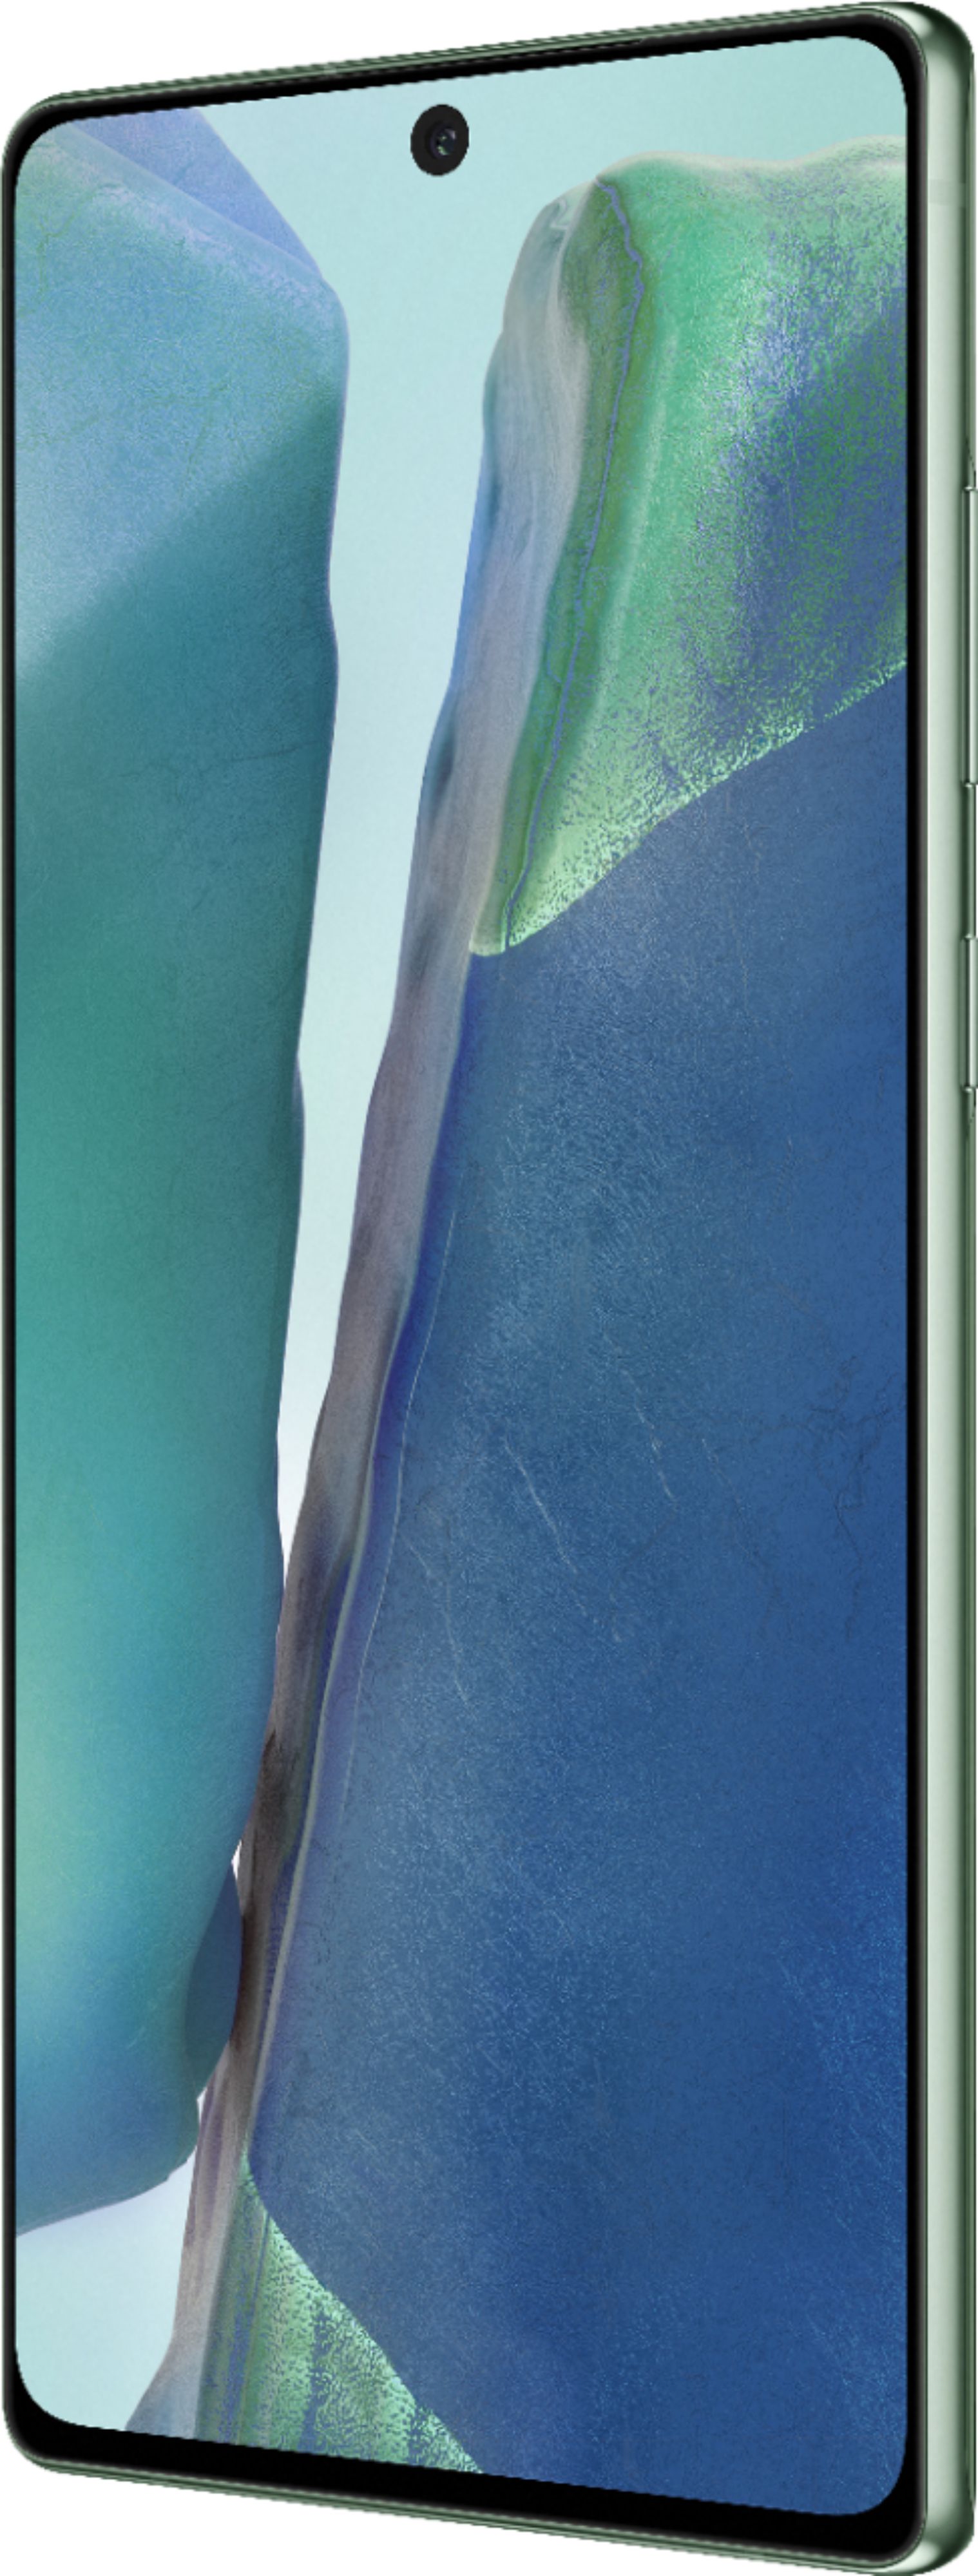 スマートフォン/携帯電話 スマートフォン本体 Best Buy: Samsung Galaxy Note20 5G 128GB (Unlocked) Mystic Green 